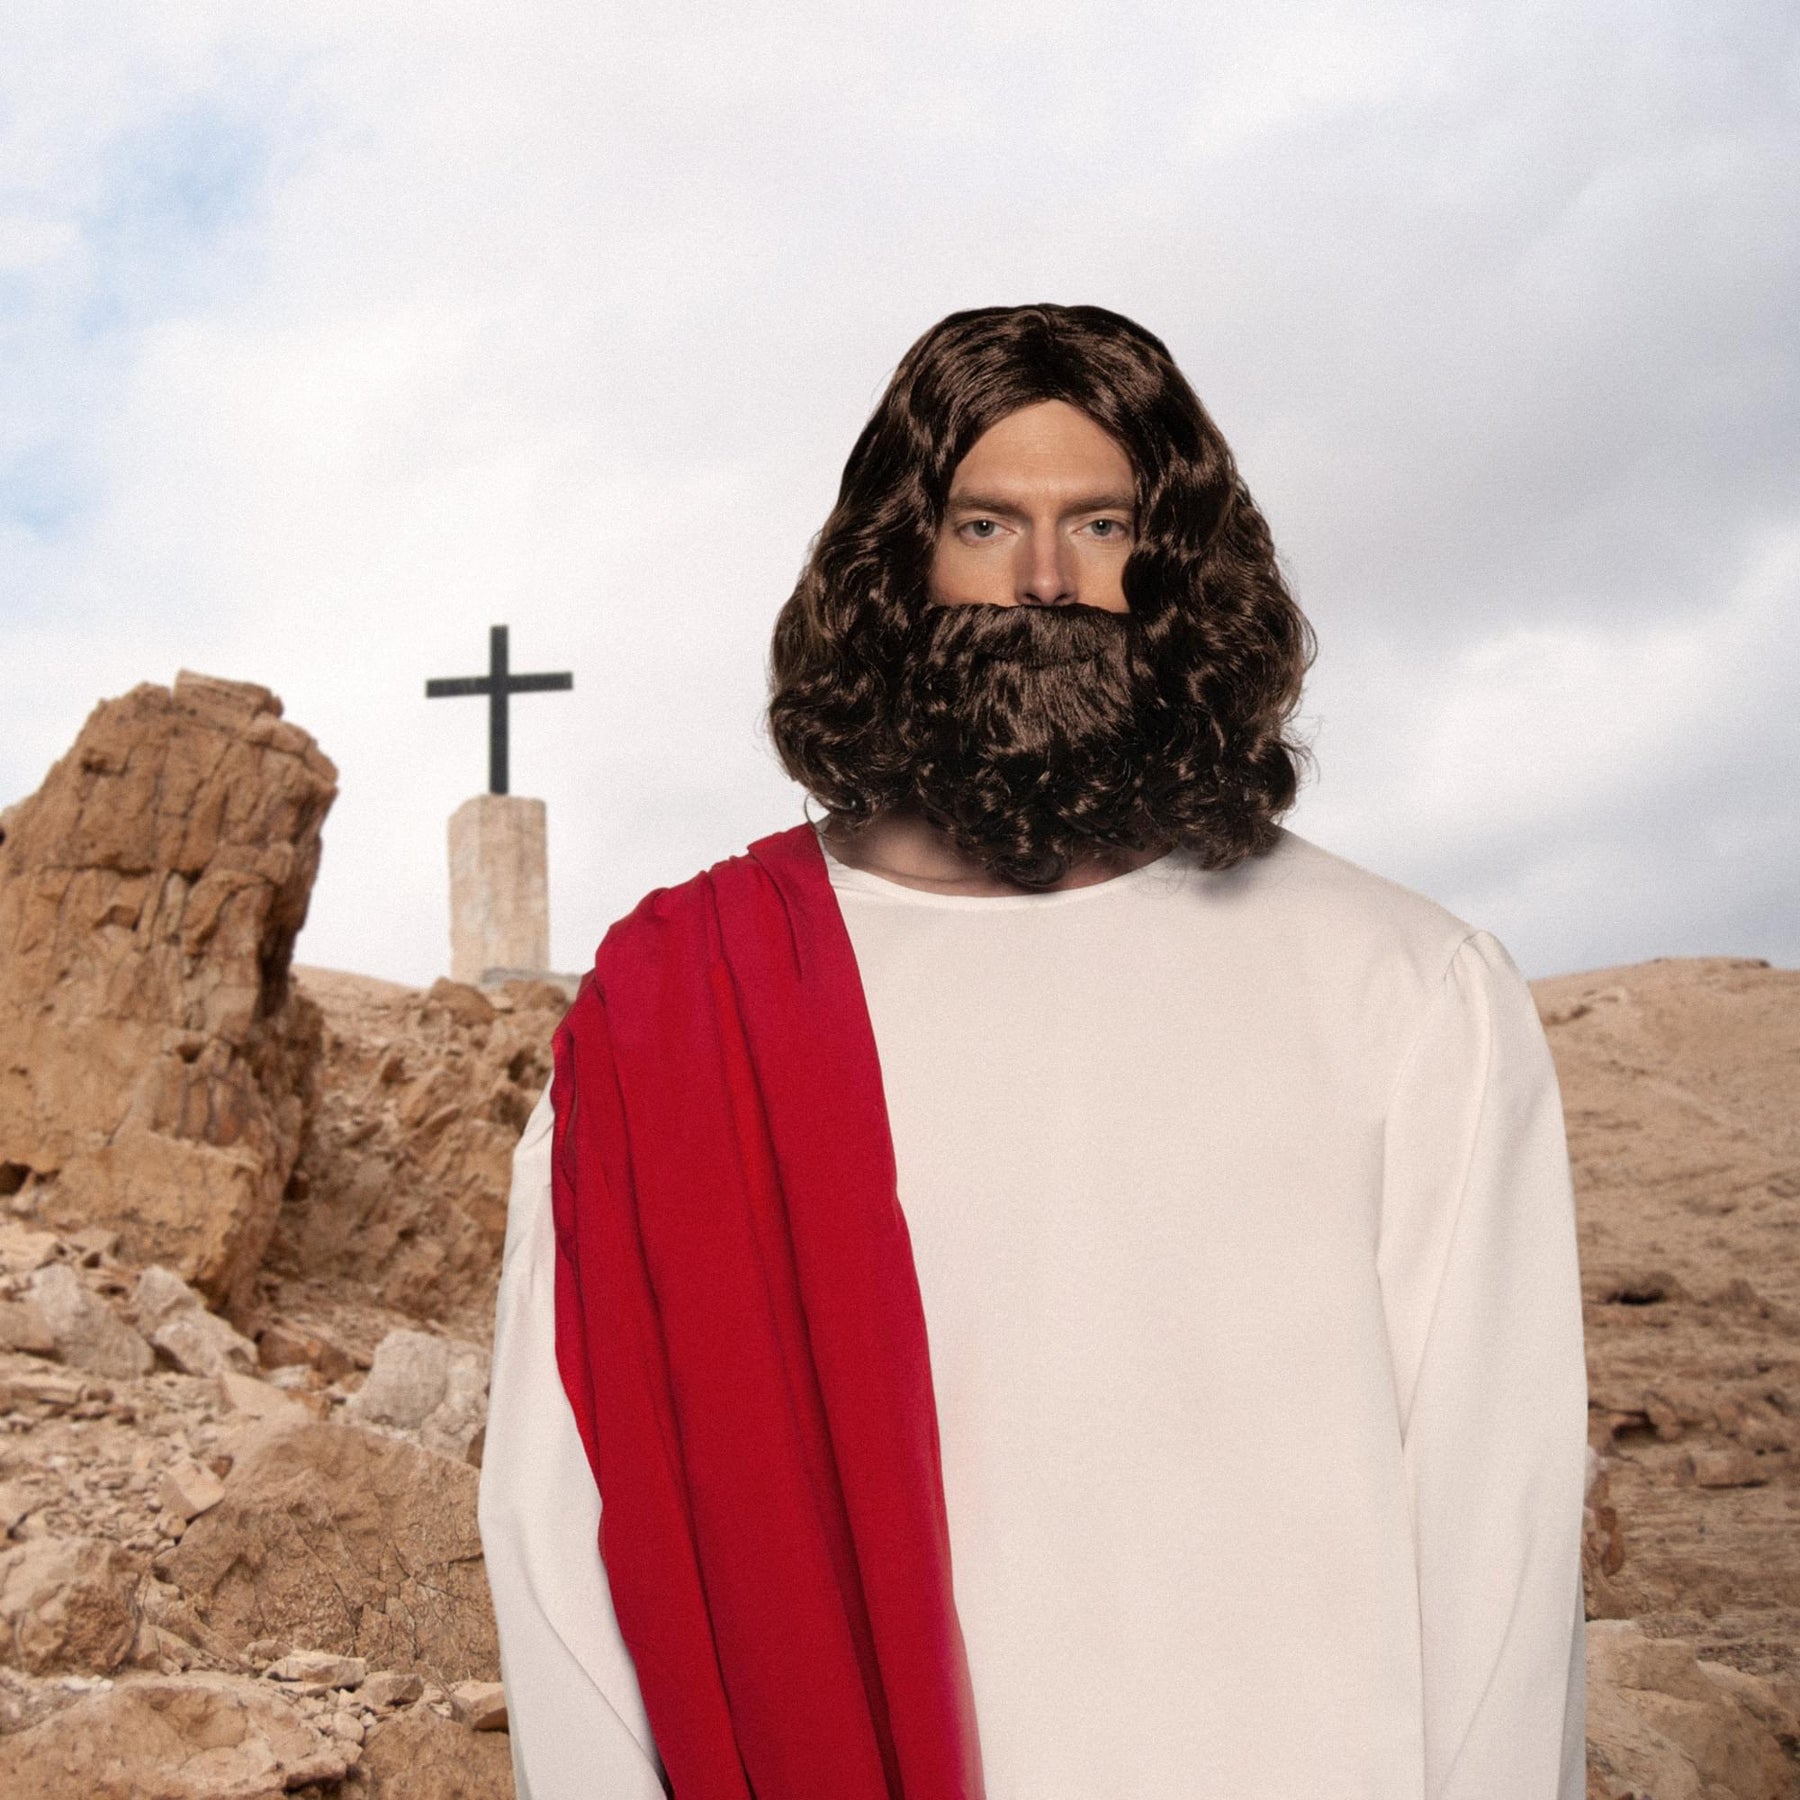 Jesus Wig & Beard Adult Costume Set